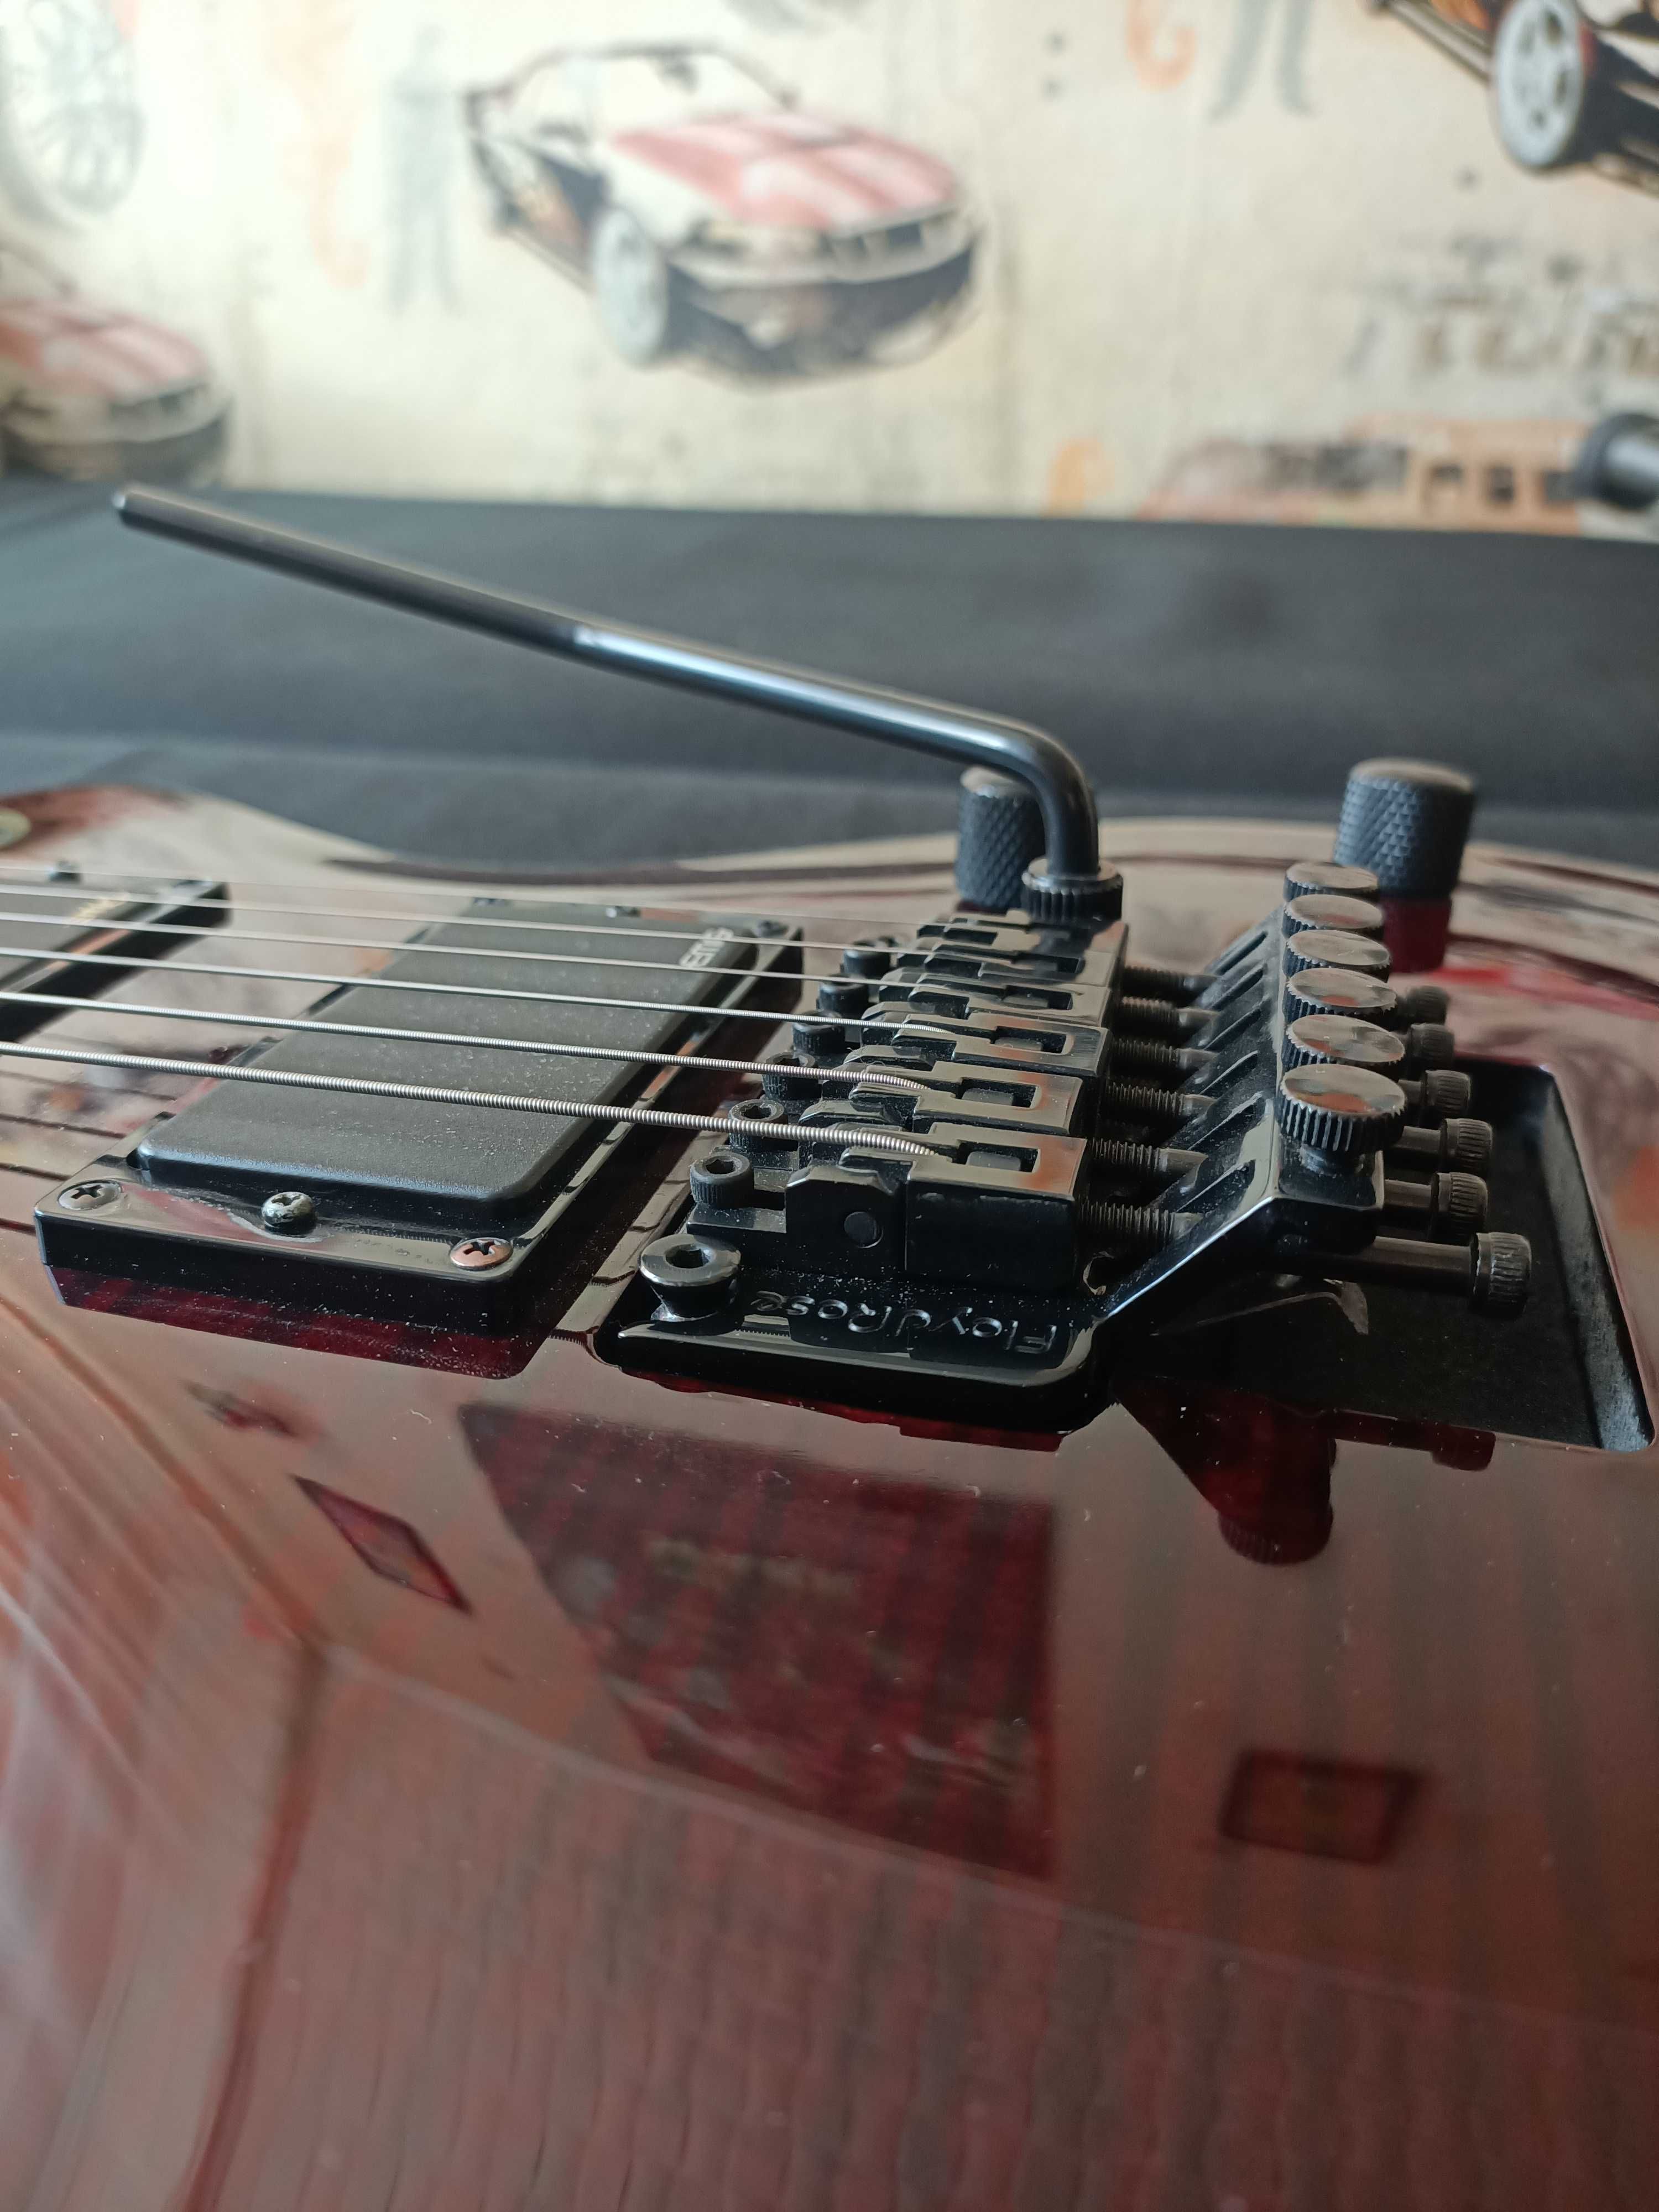 Gitara elektryczna Dean Deceiver Originalny Floyd Rose EMG